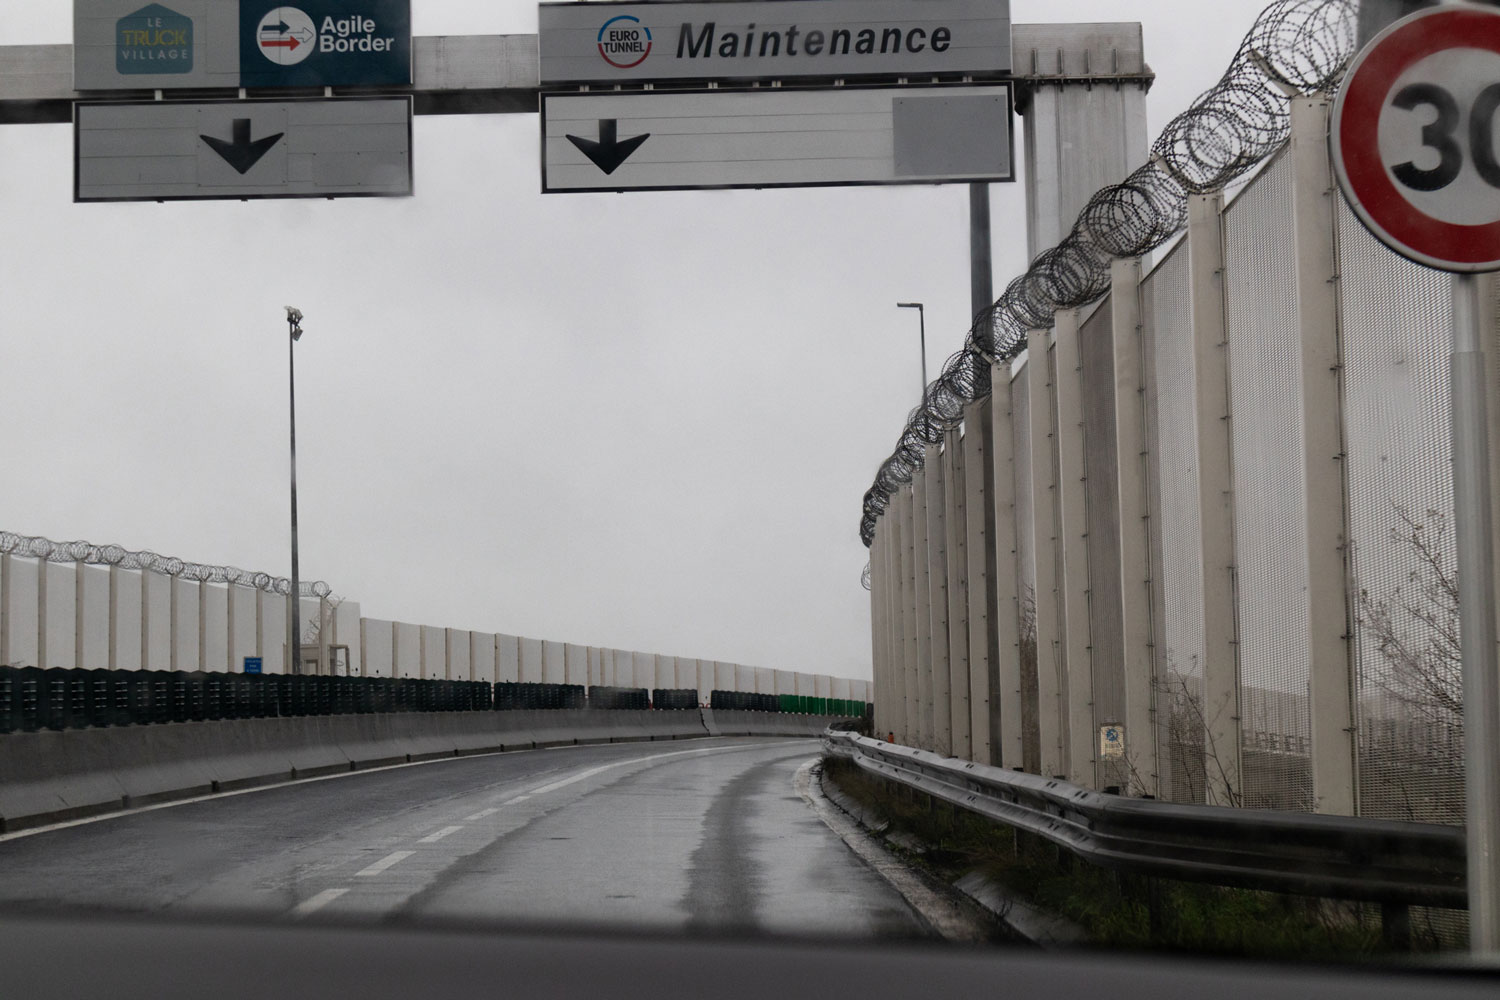 Les alentours du Tunnel sous la Manche sont très sécurisés © Léa VILLALBA